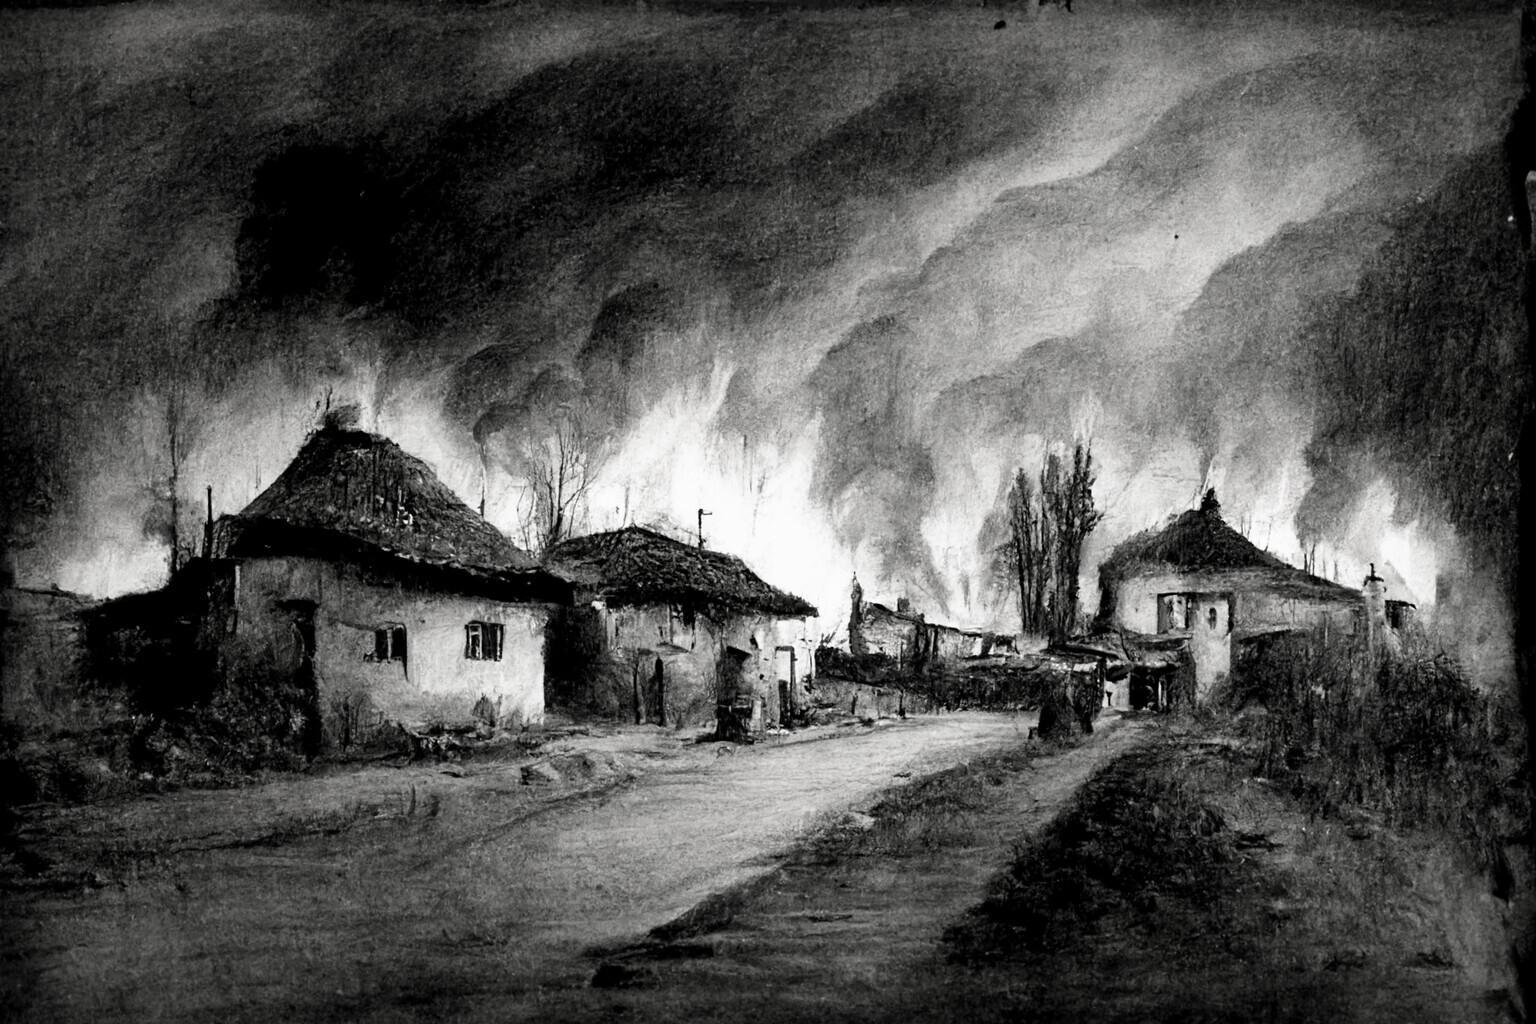 Burning of Crinii
c. 1885
Photograph